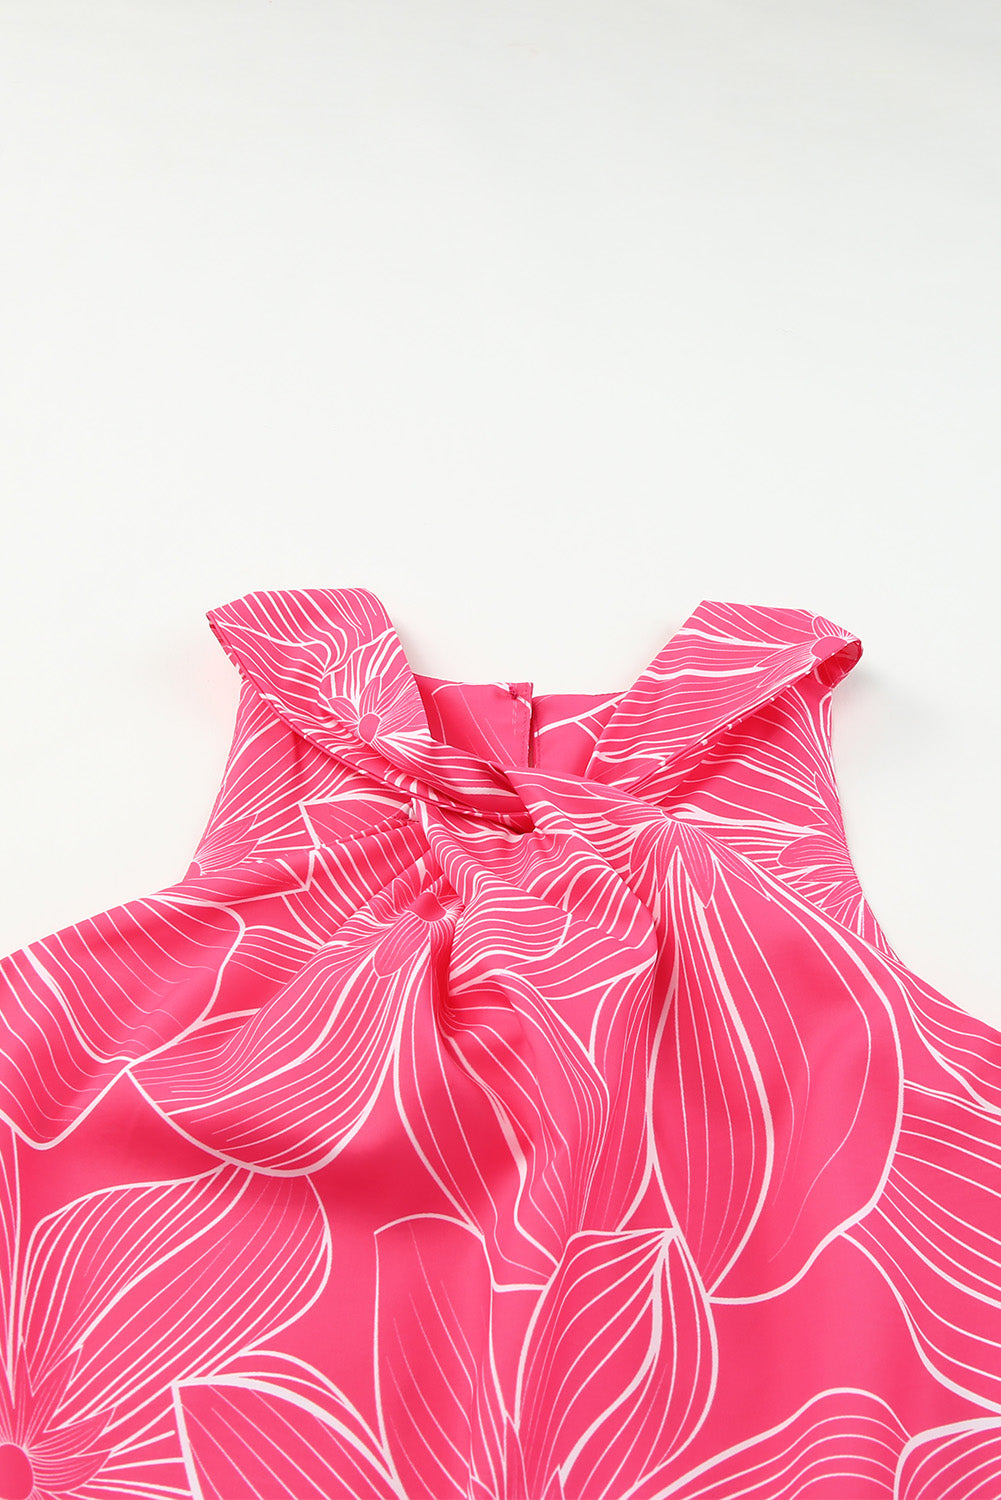 Rožnata majica z zavihanim izrezom in cvetličnim potiskom